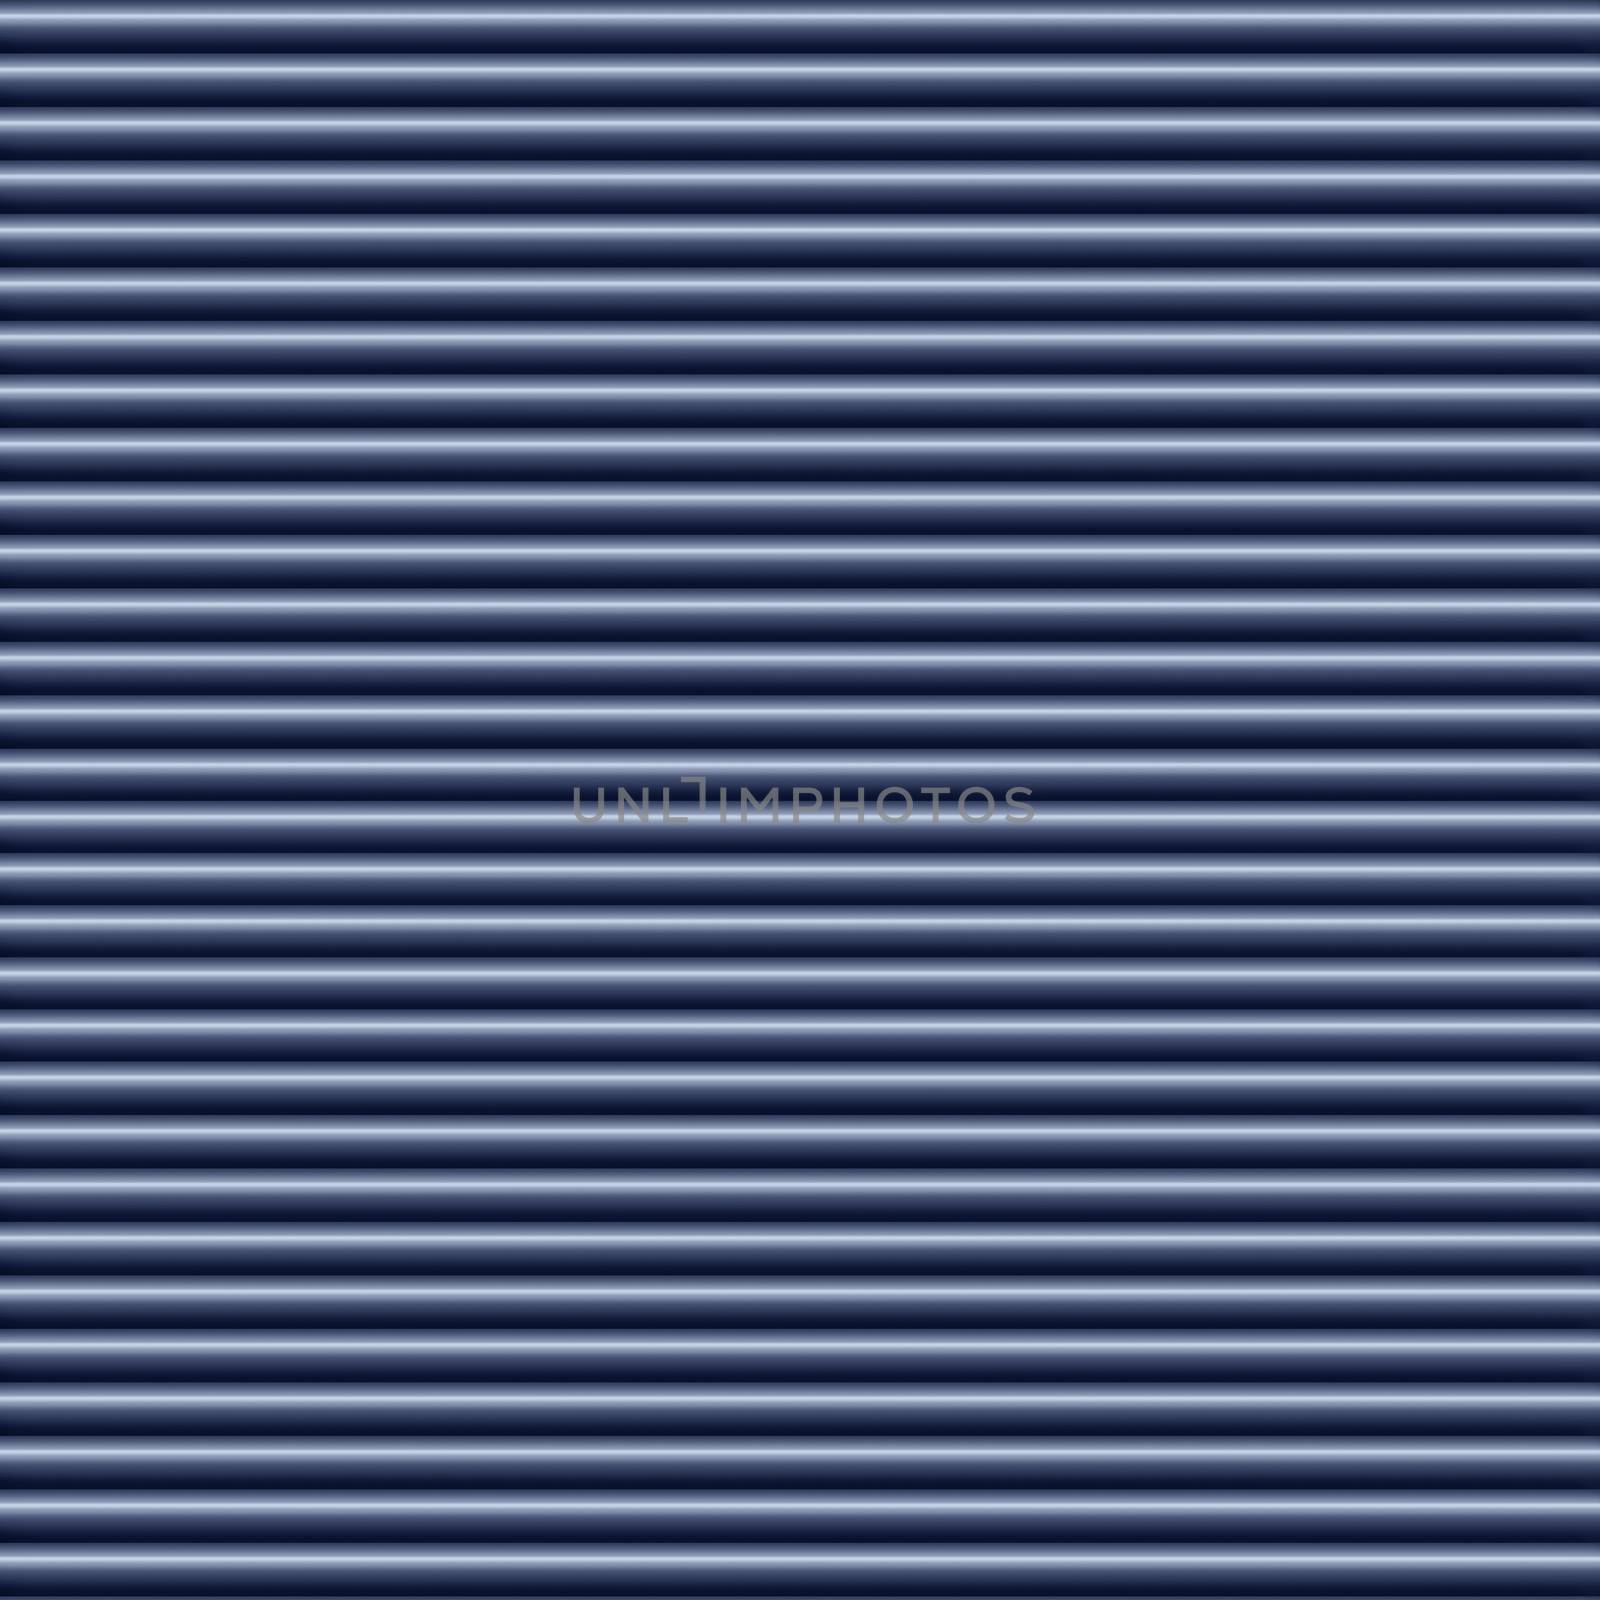 Horizontal blue metallic tube background texture seamlessly tileable